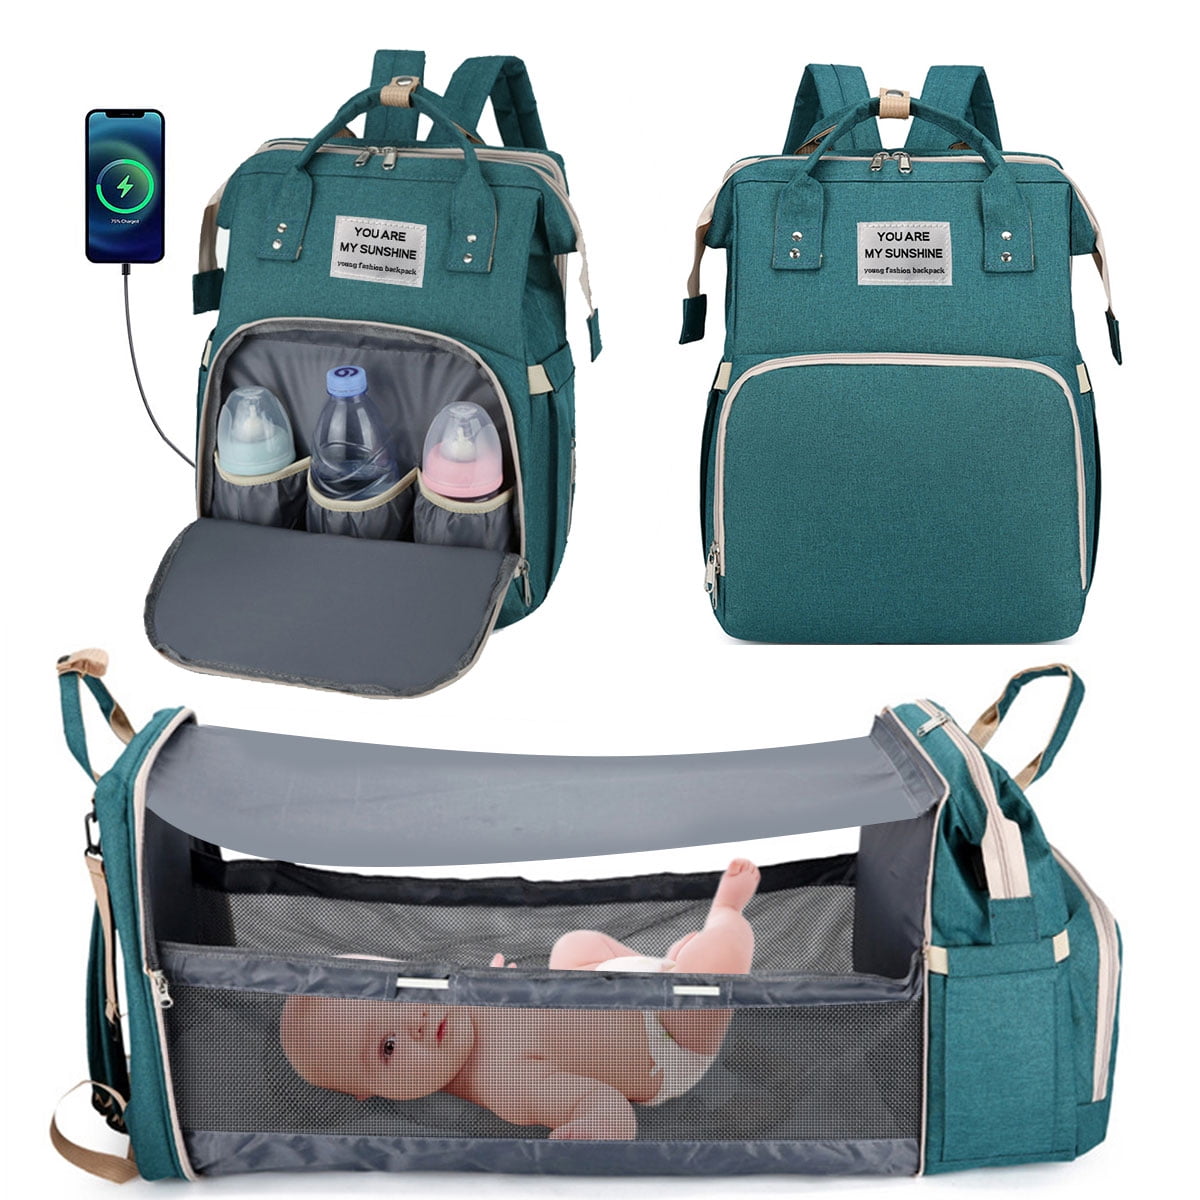 PACKNBUY Diaper Bag Backpack Fun Print Multiuse Travel Baby Bag